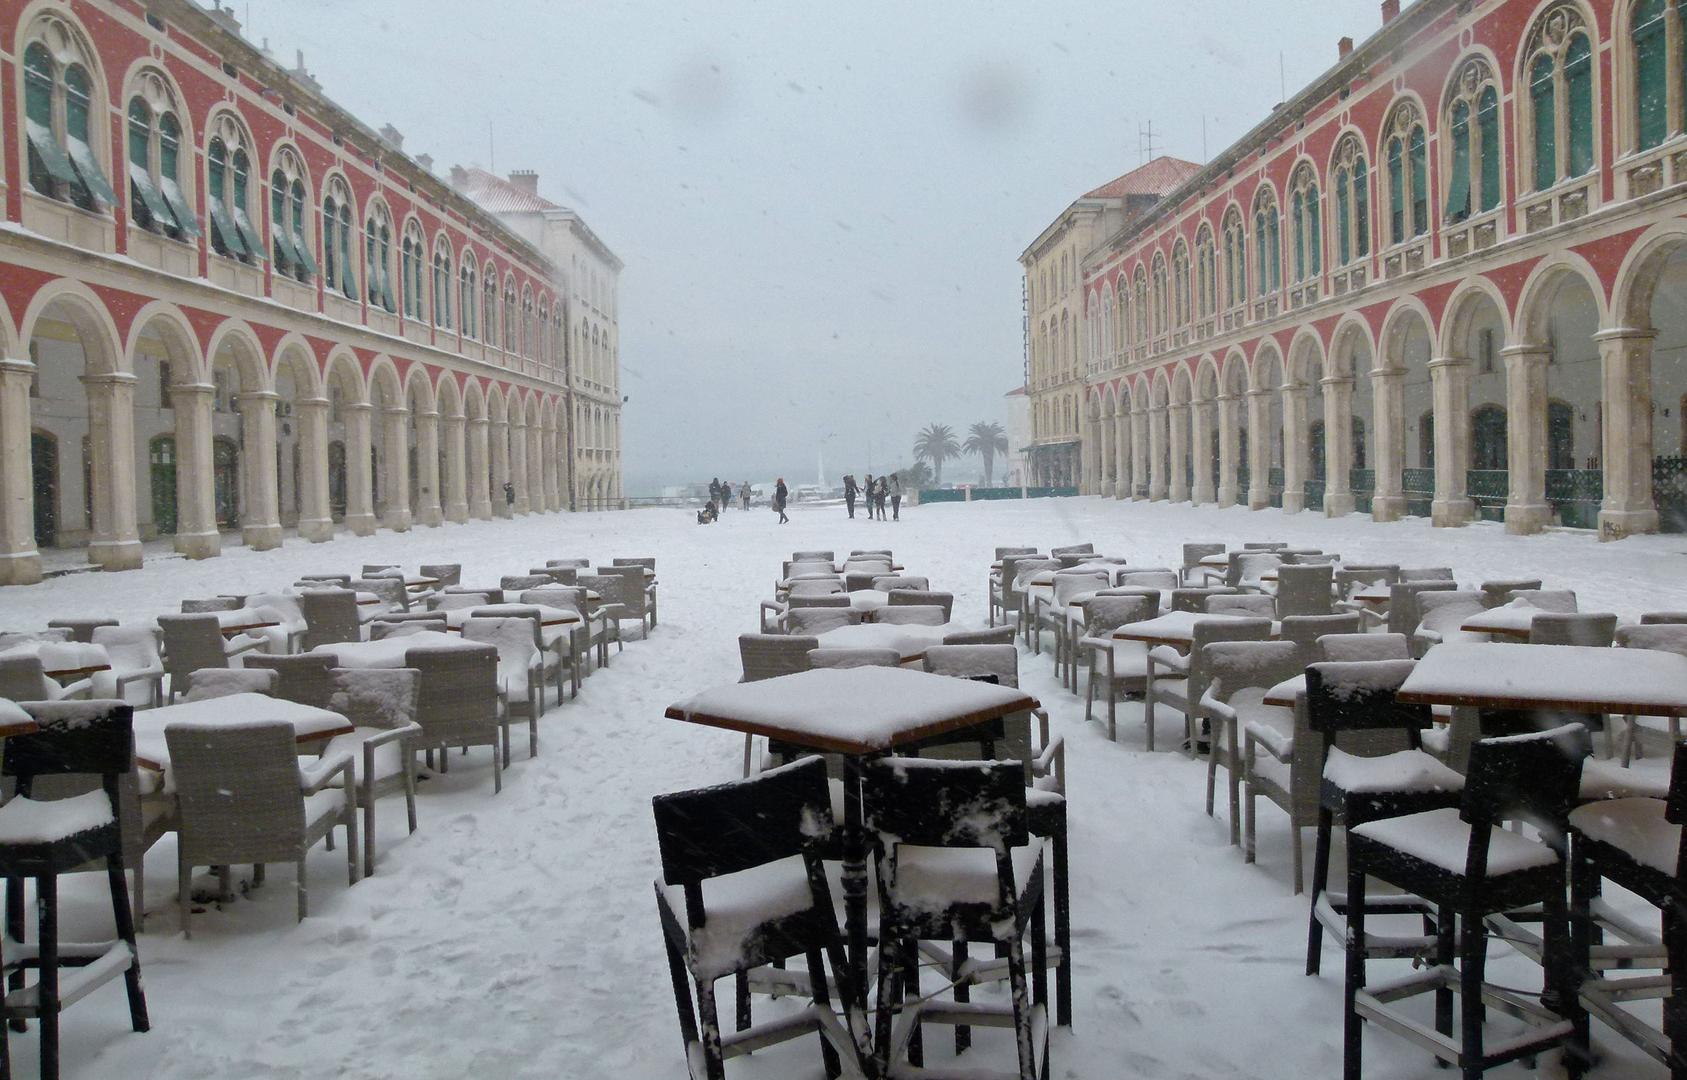 Prije točno 12 godina, 3. veljače 2012., Split se probudio pod snježnim pokrivačem od 20-ak centimetara.

